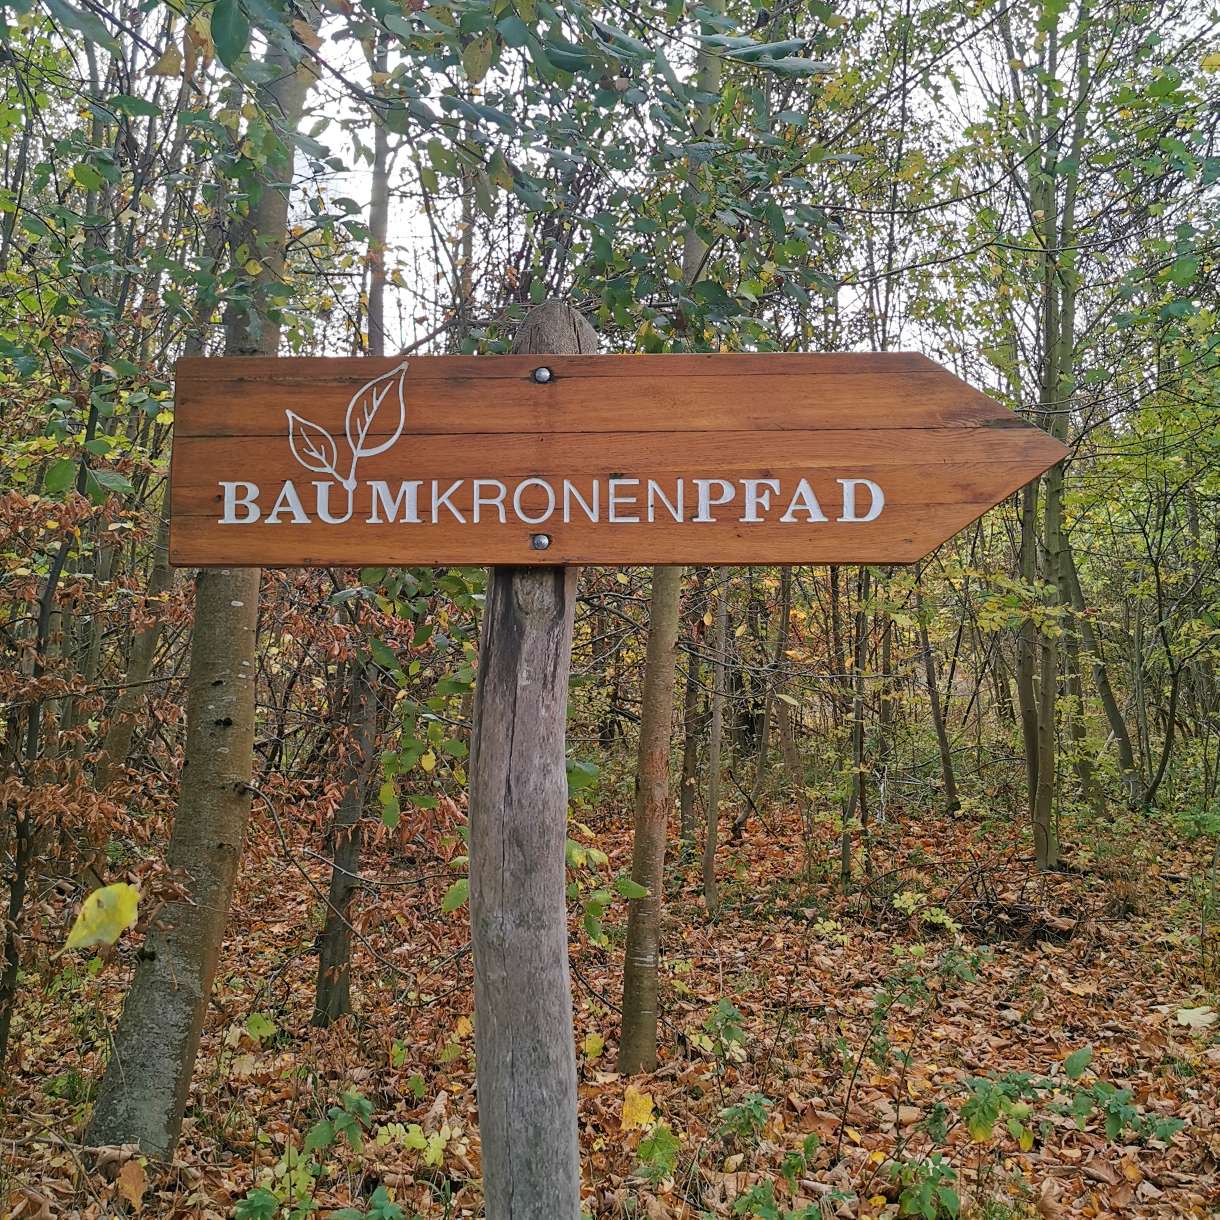 Baumkronenpfad im Nationalpark Hainich, Urwald erleben in Thüringen, Erfahrungsbericht, Rabauken vom See